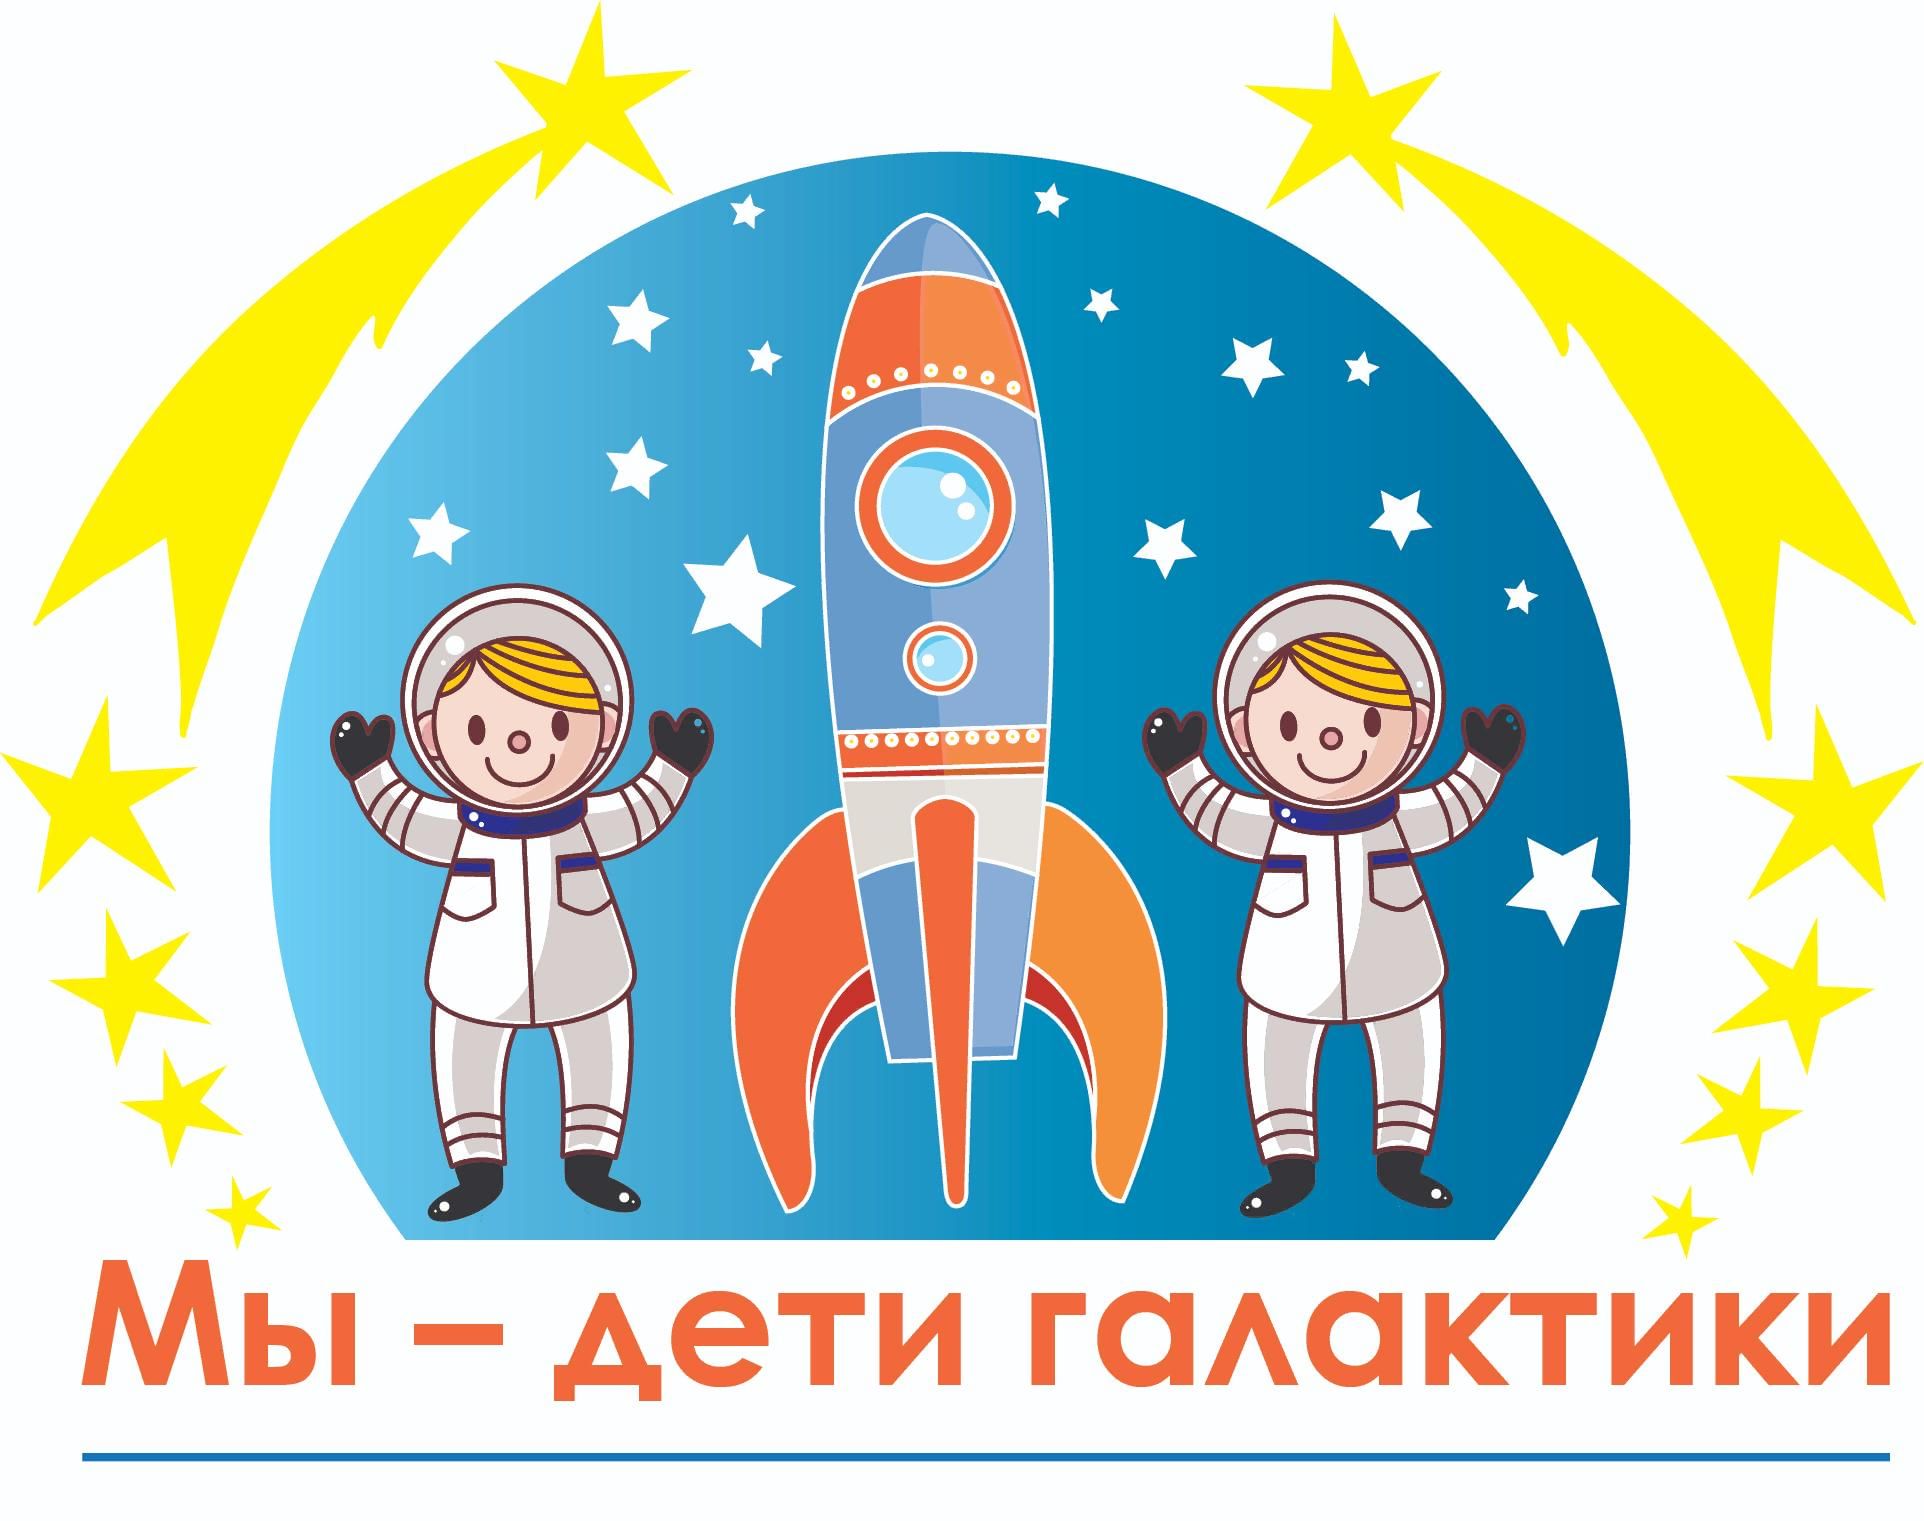 день космонавтики в детском саду